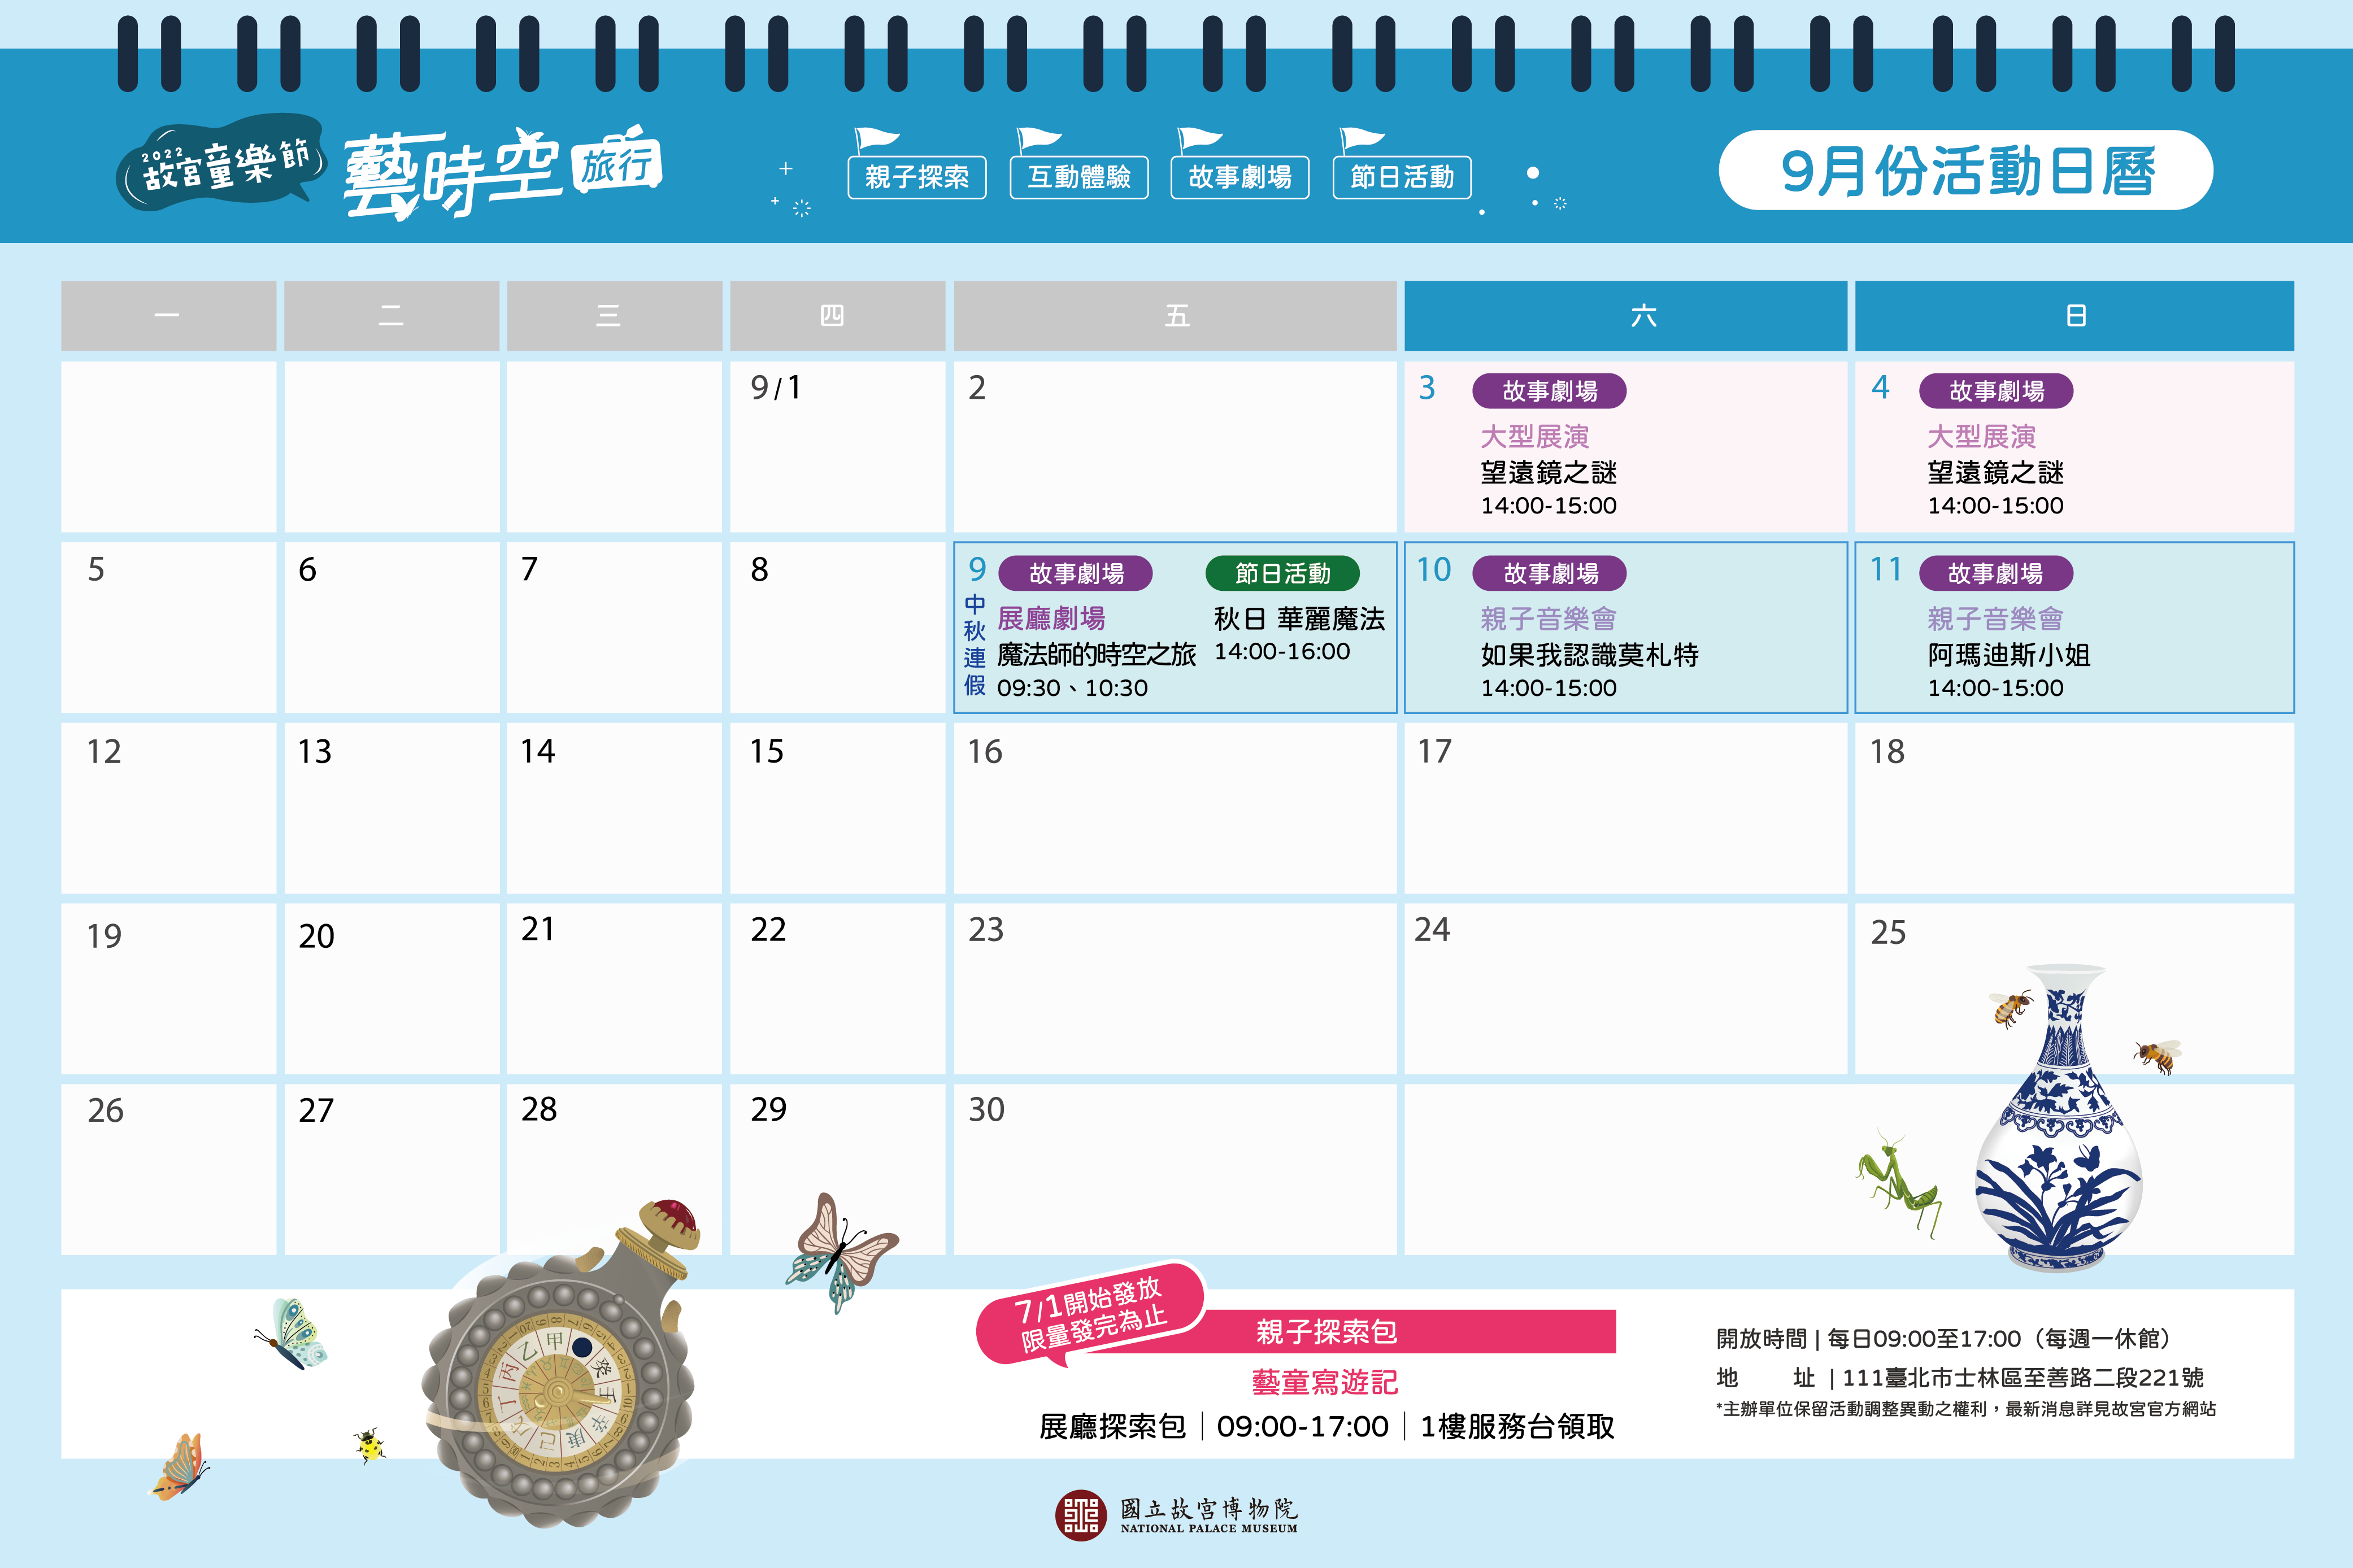 9月份活動日曆，活動詳情請見下方文字